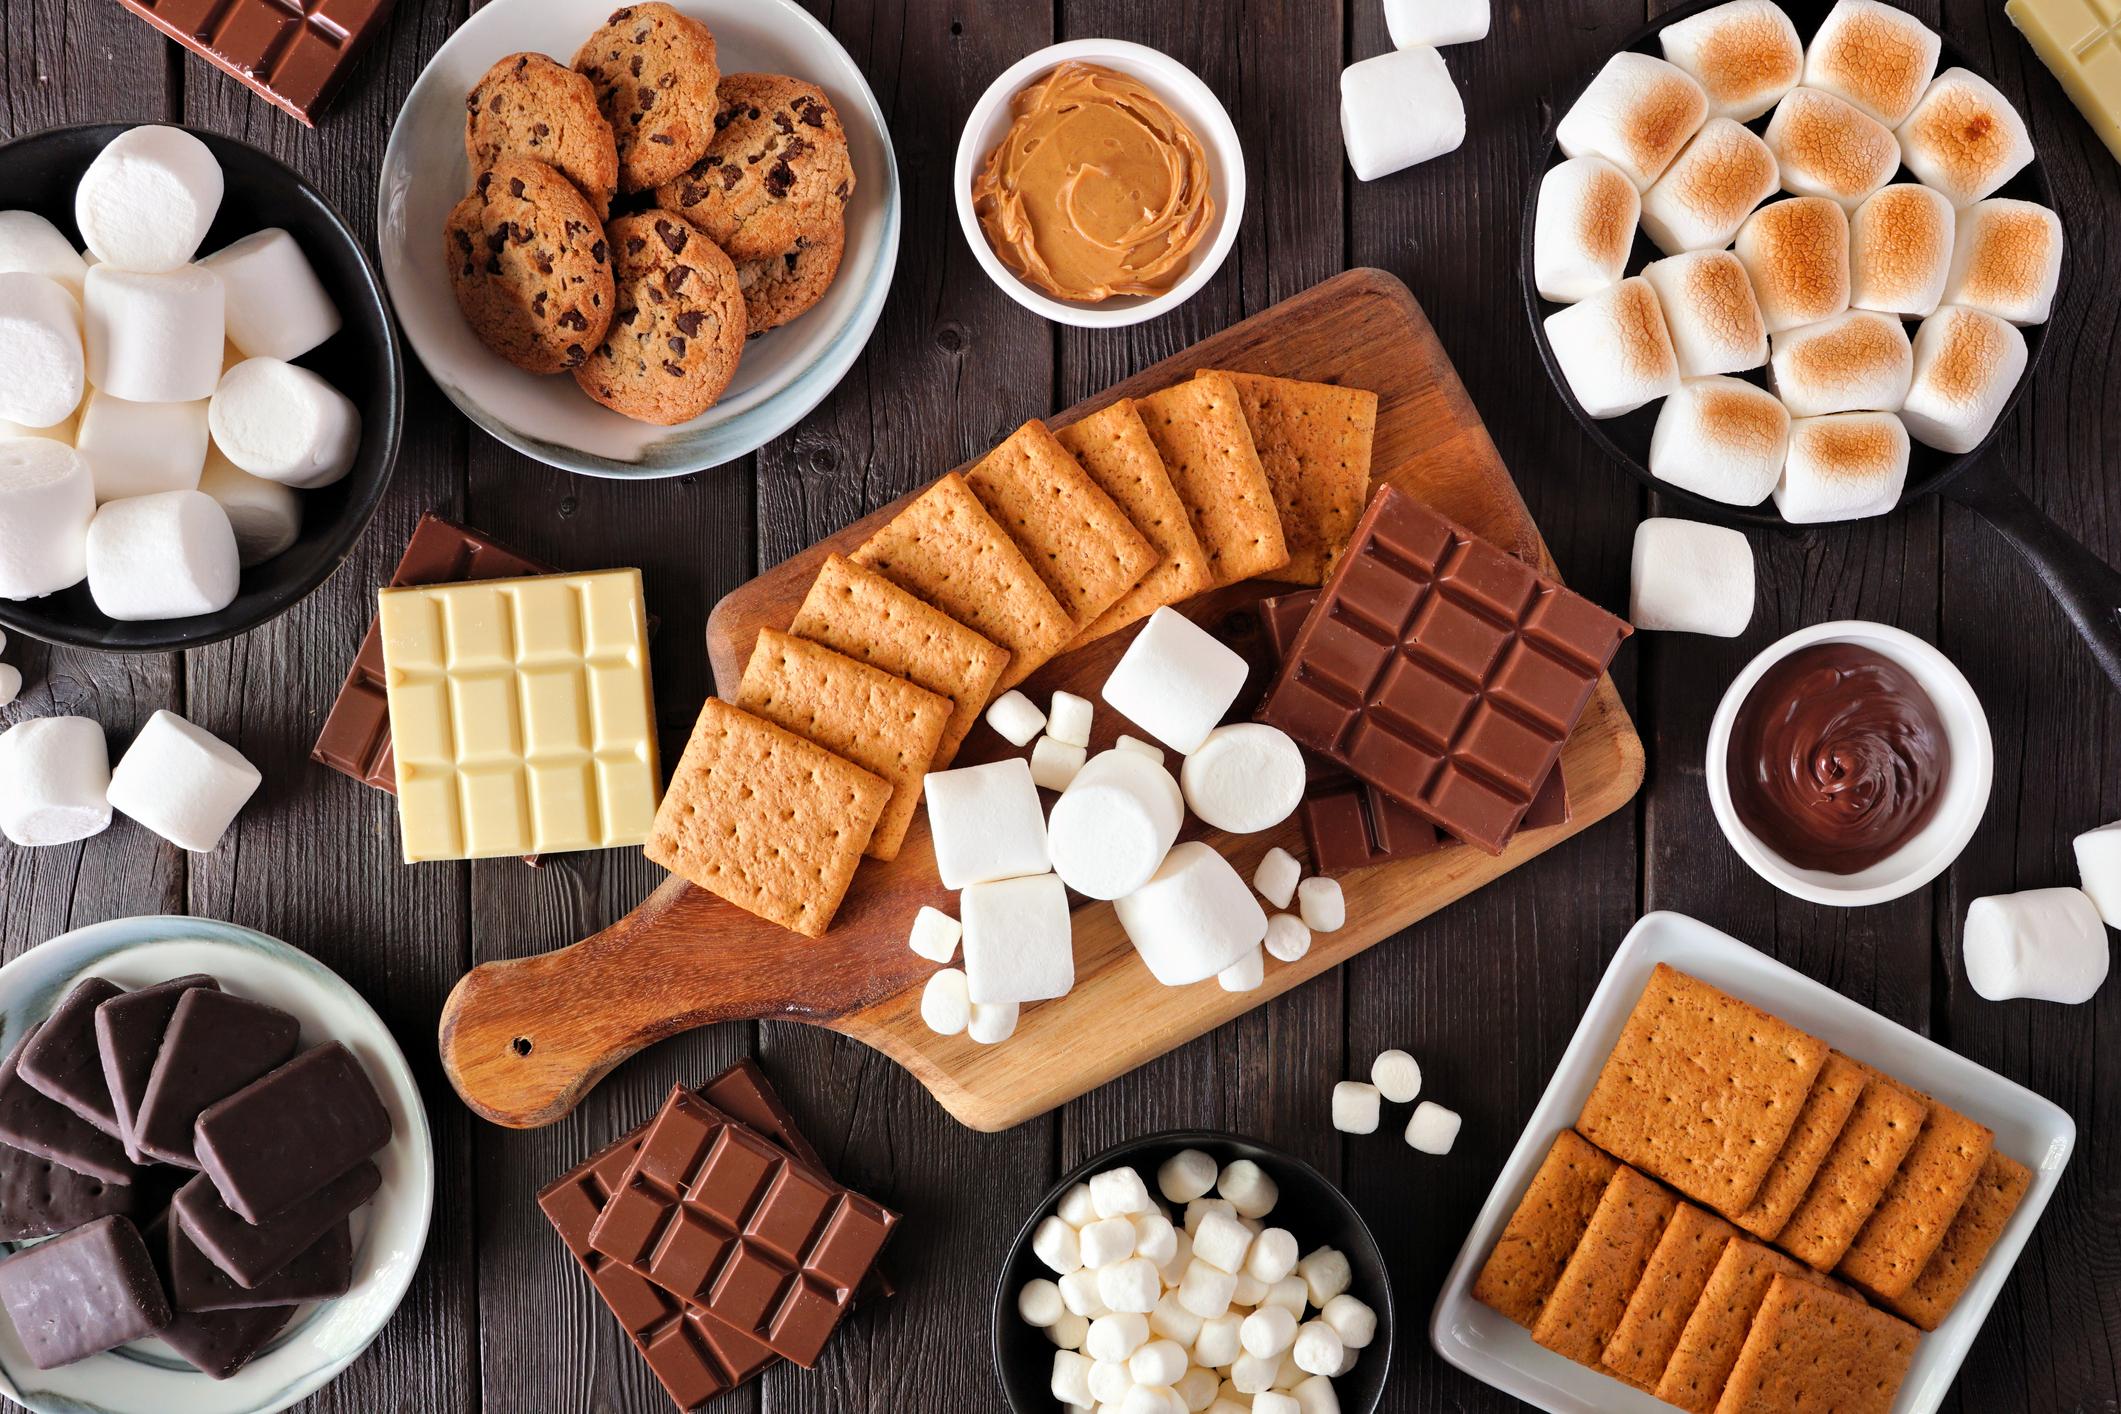 Calculs rénaux : manger des aliments contenant des sucres ajoutés augmente le risque 